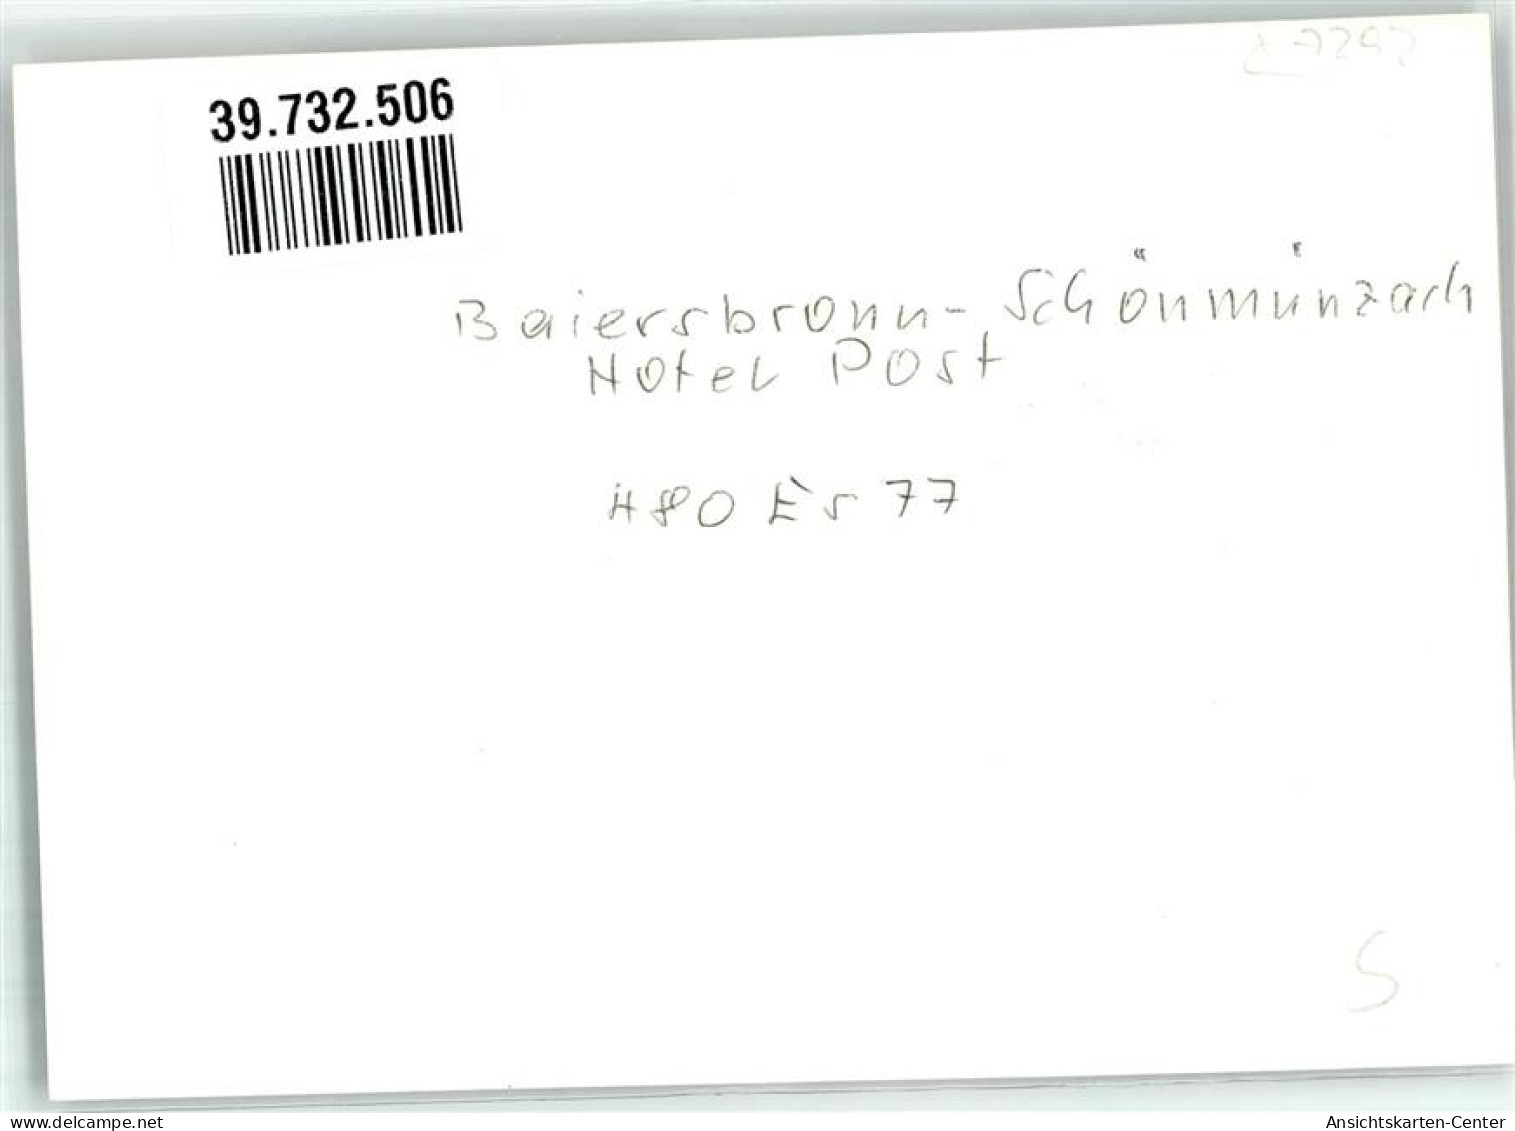 39732506 - Schoenmuenzach - Baiersbronn